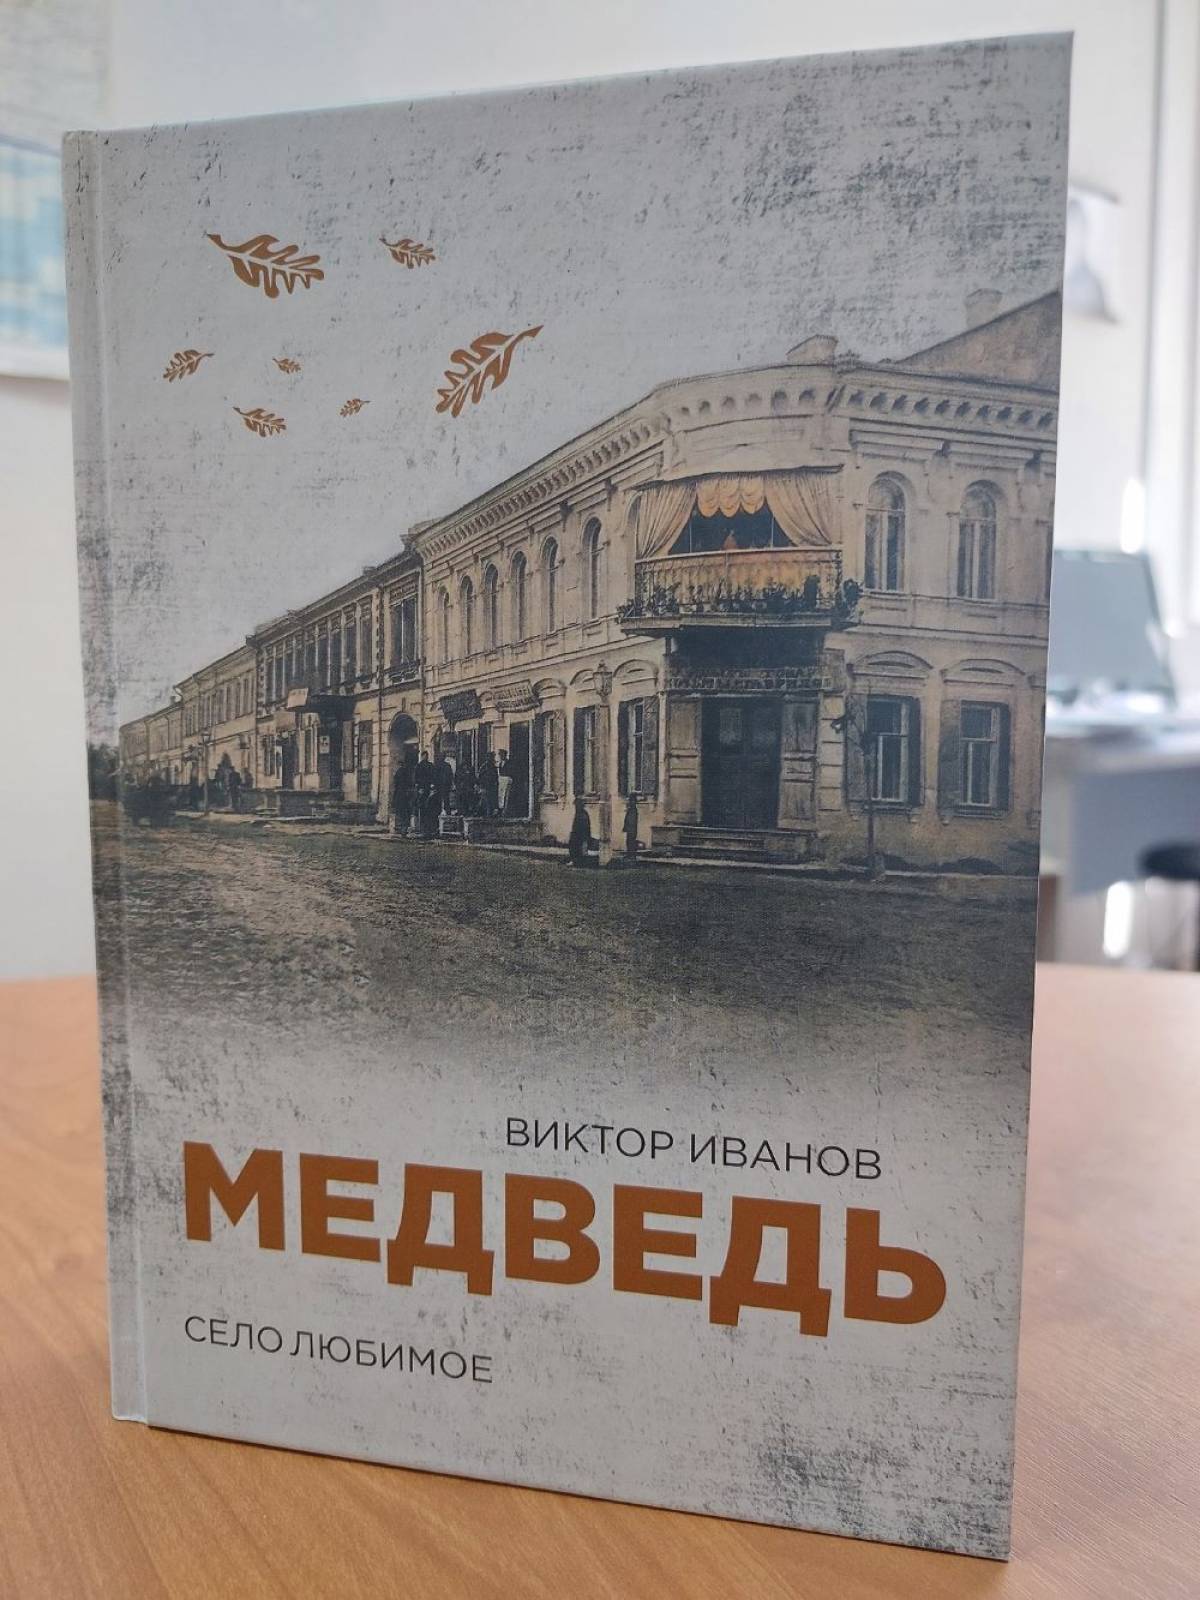 Презентации книги пройдут в библиотеках села Медведь, ж/д станции Уторгош и поселка Шимск.